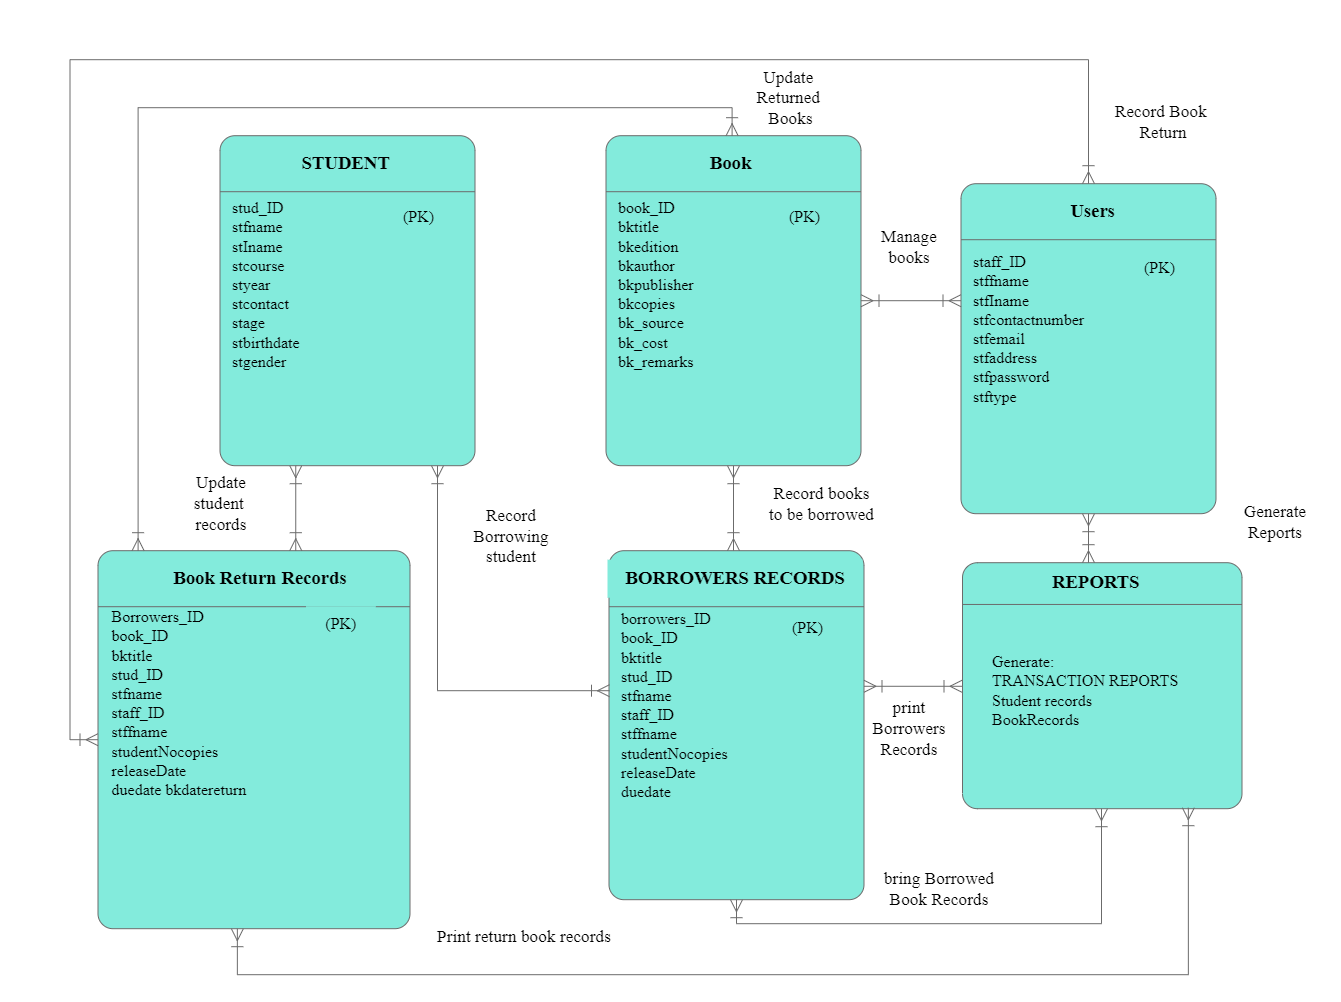 ER Diagram for Library Management System Database